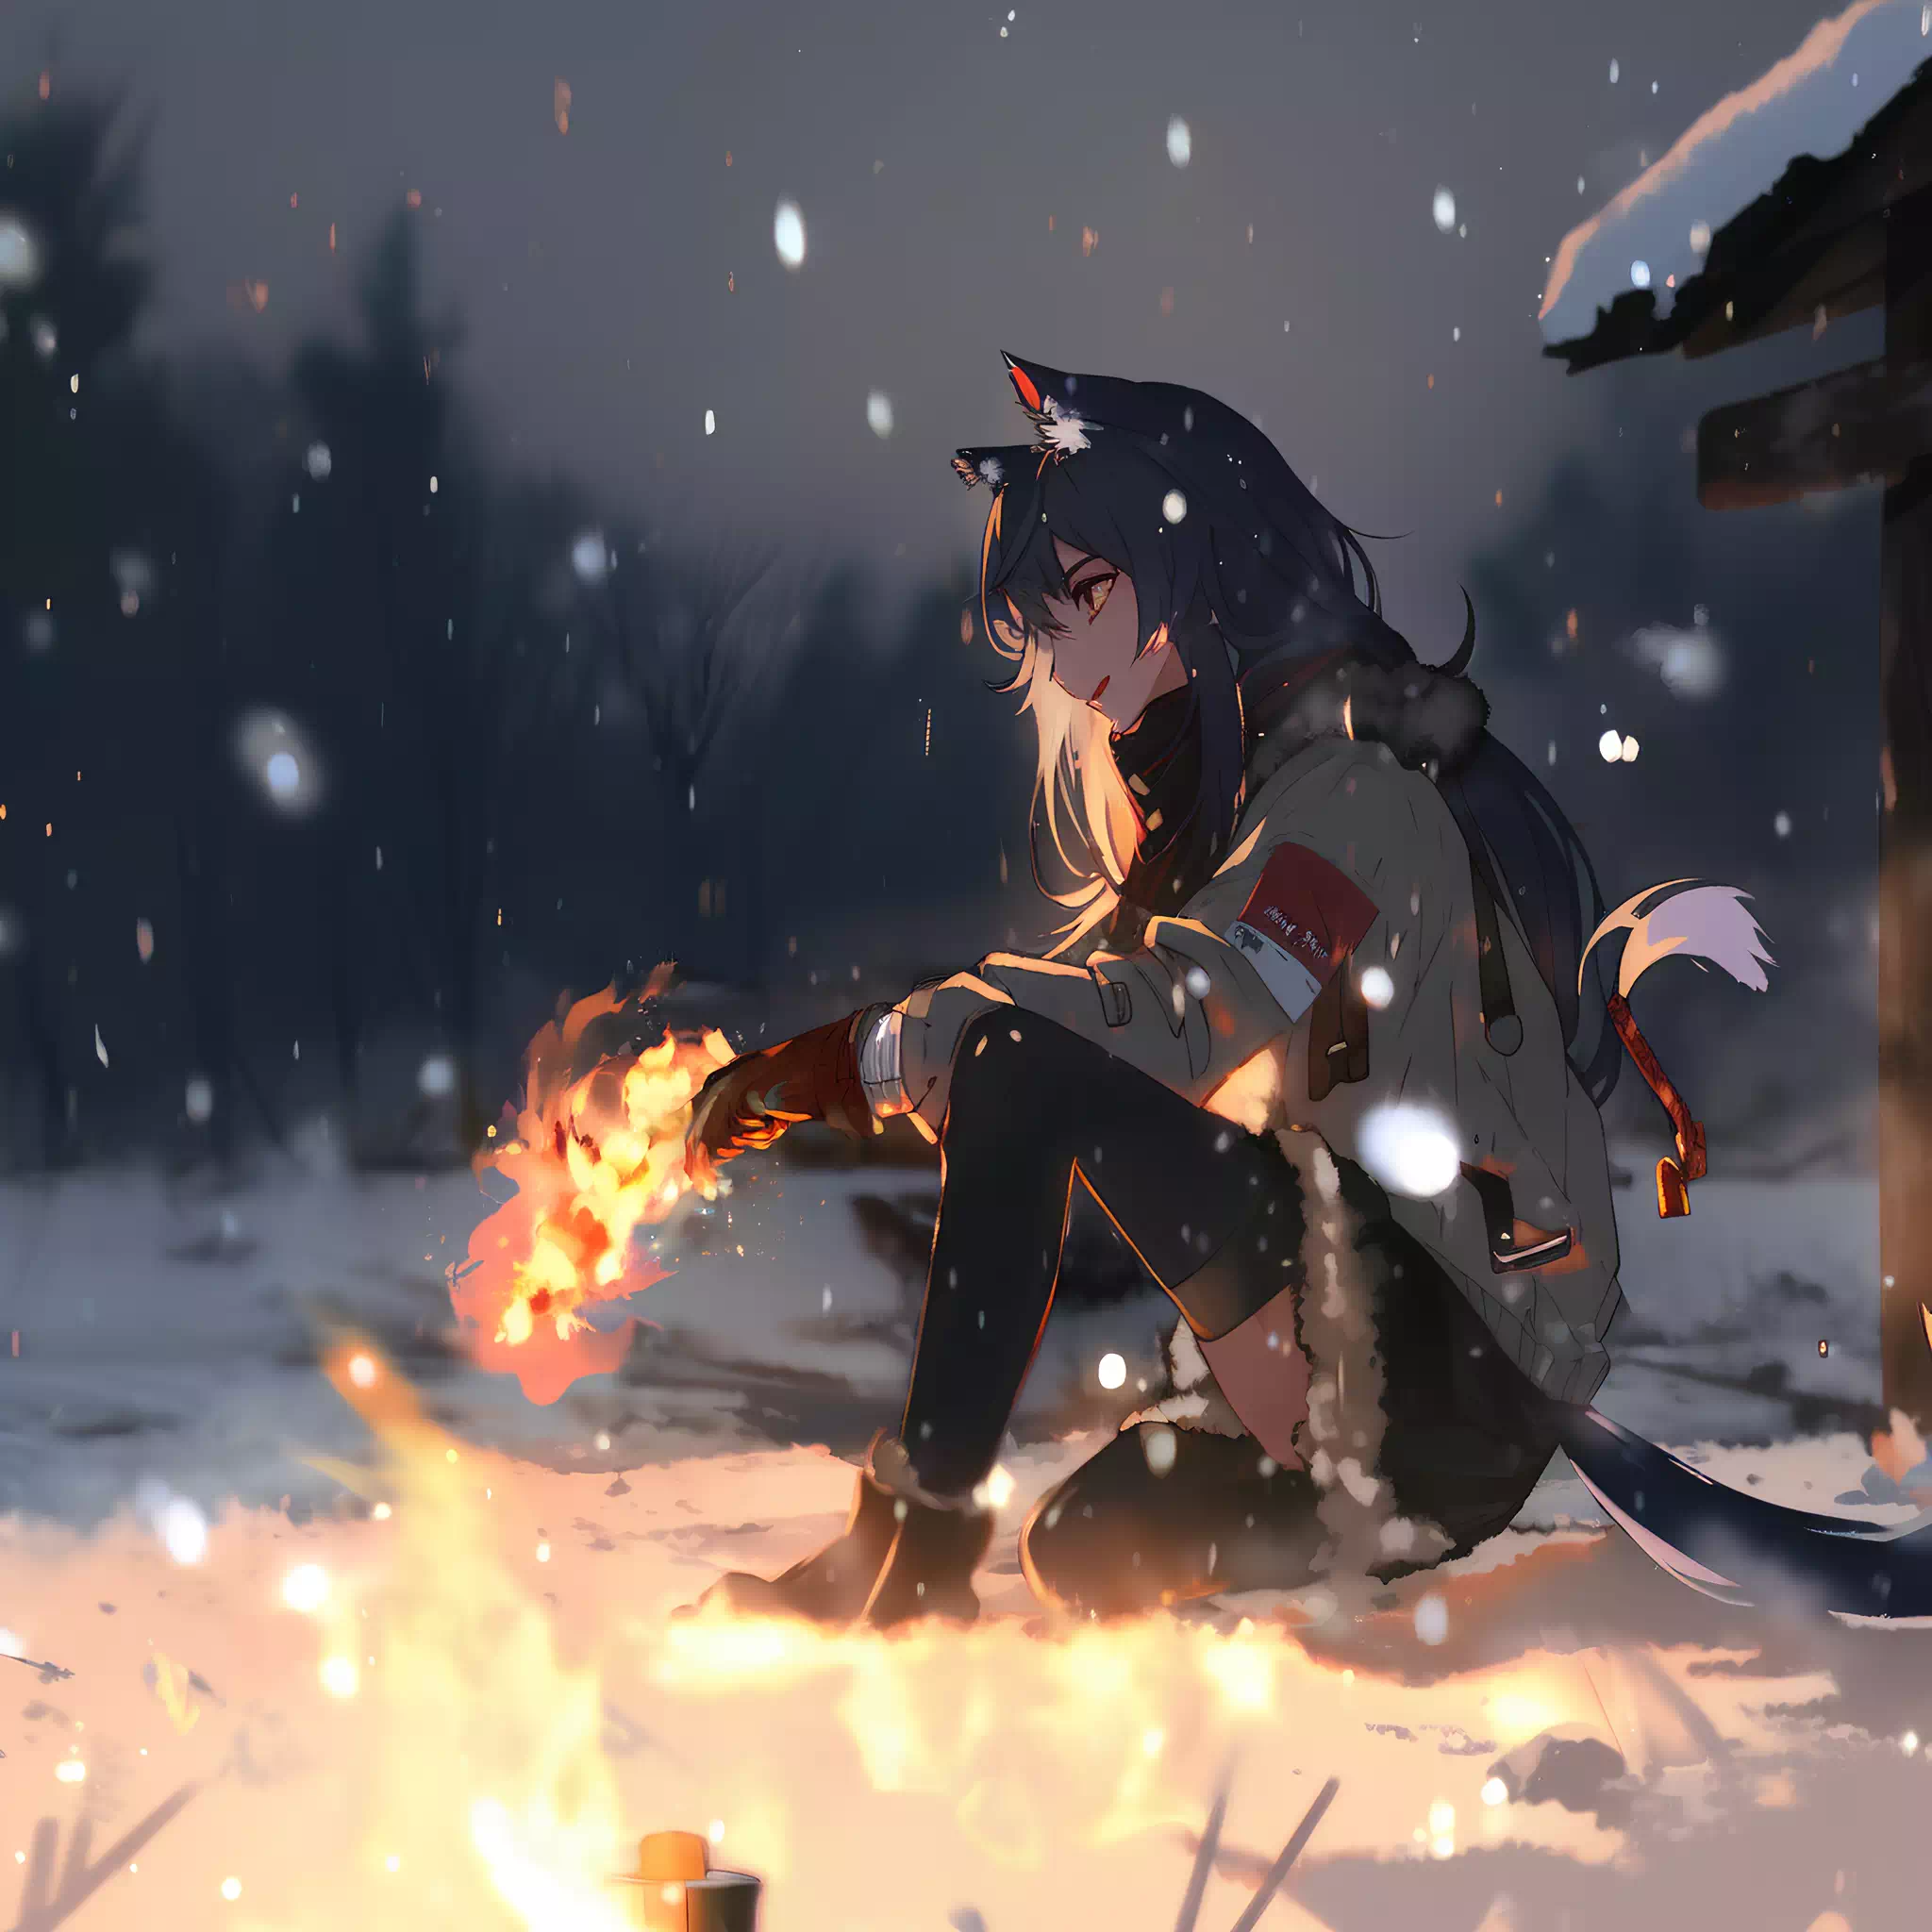 Winter on Fire